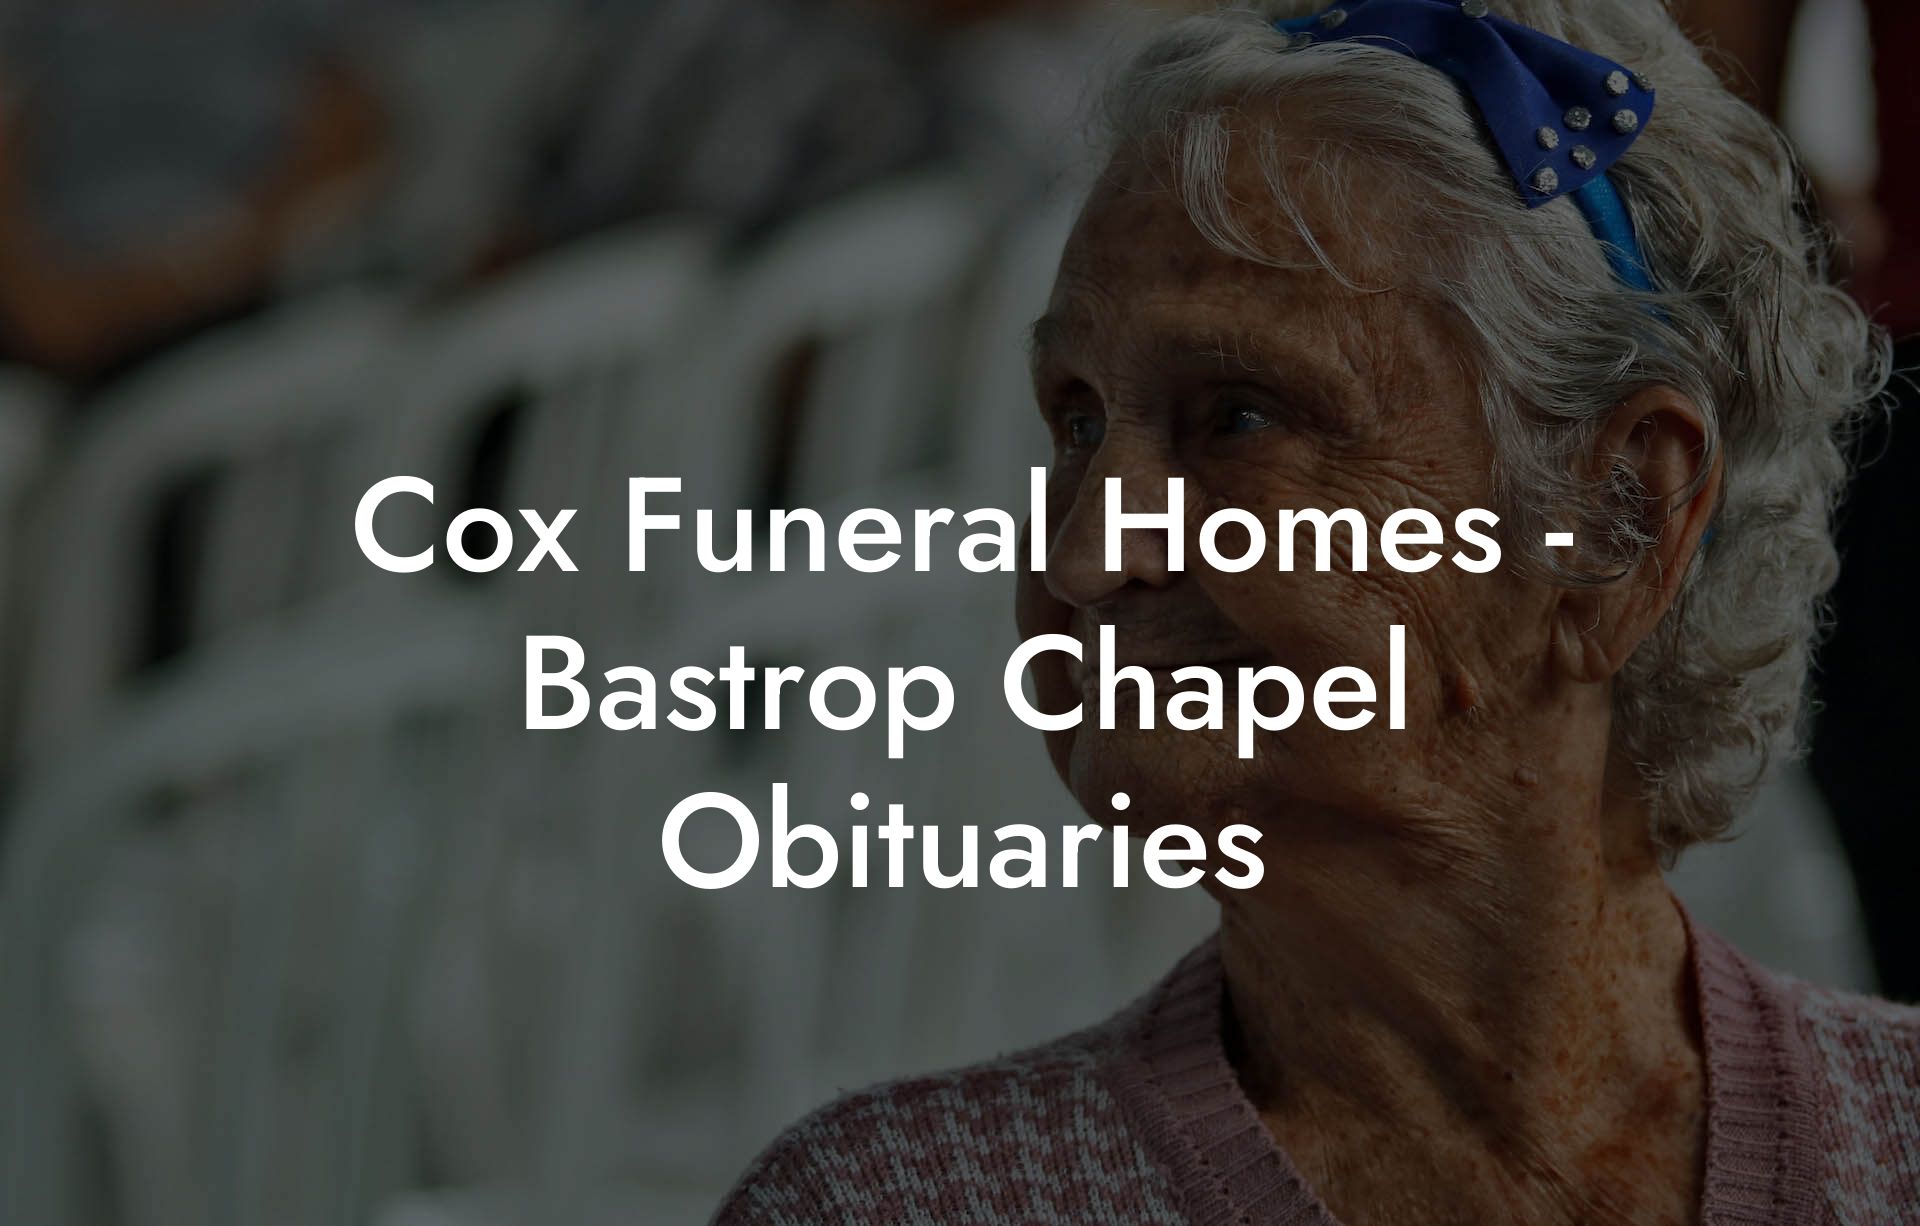 Cox Funeral Homes - Bastrop Chapel Obituaries